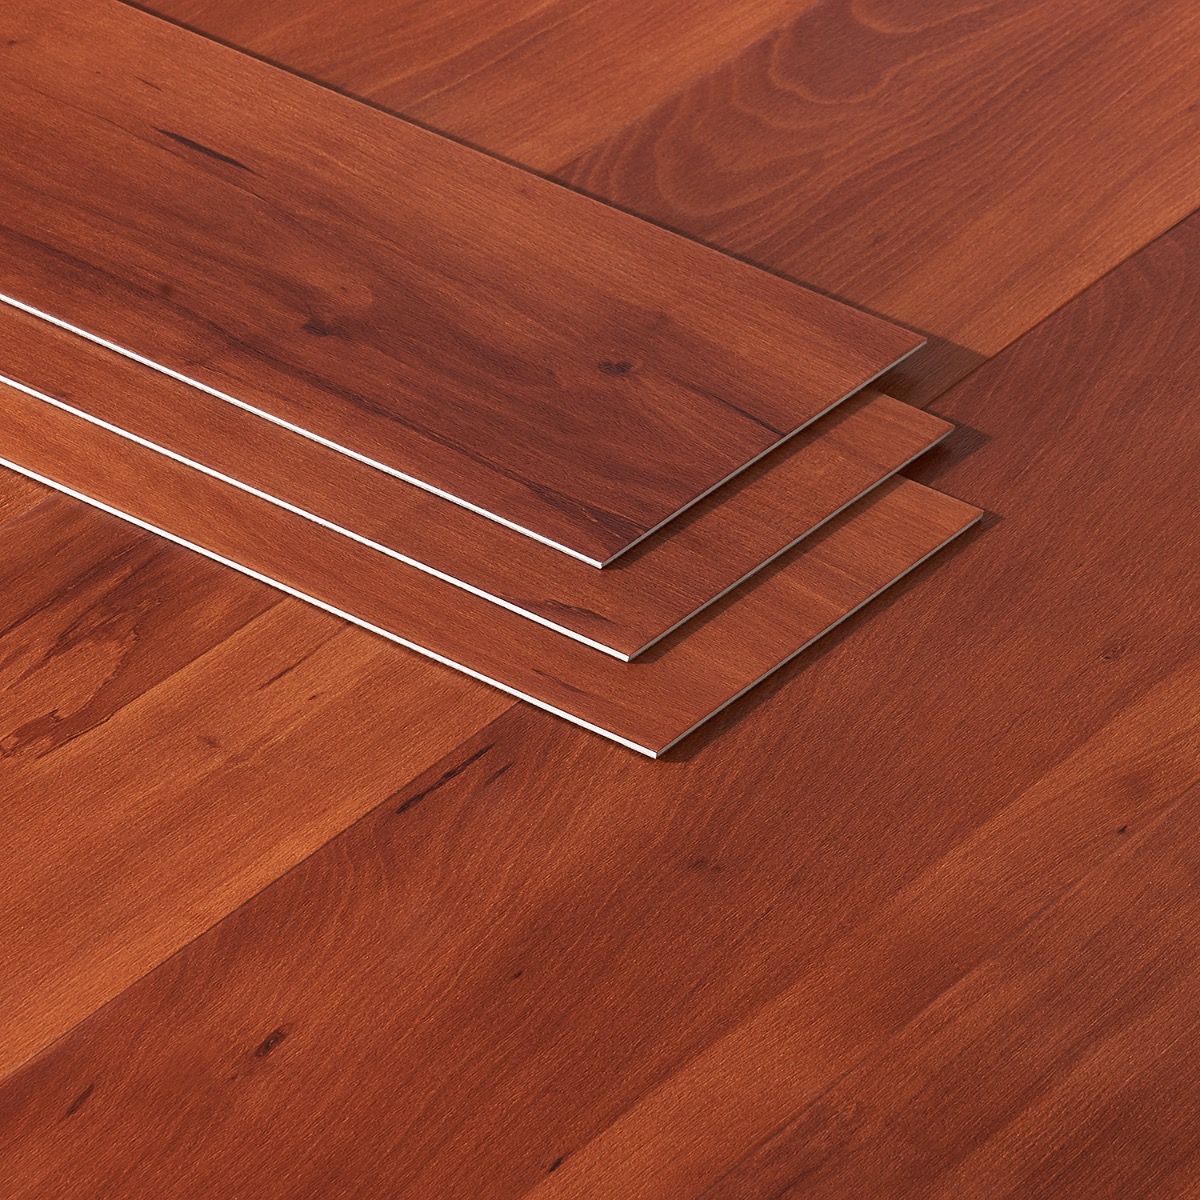 Waterproof Luxury Vinyl Plank Flooring, Ceramic Tile Look Vinyl Plank Flooring